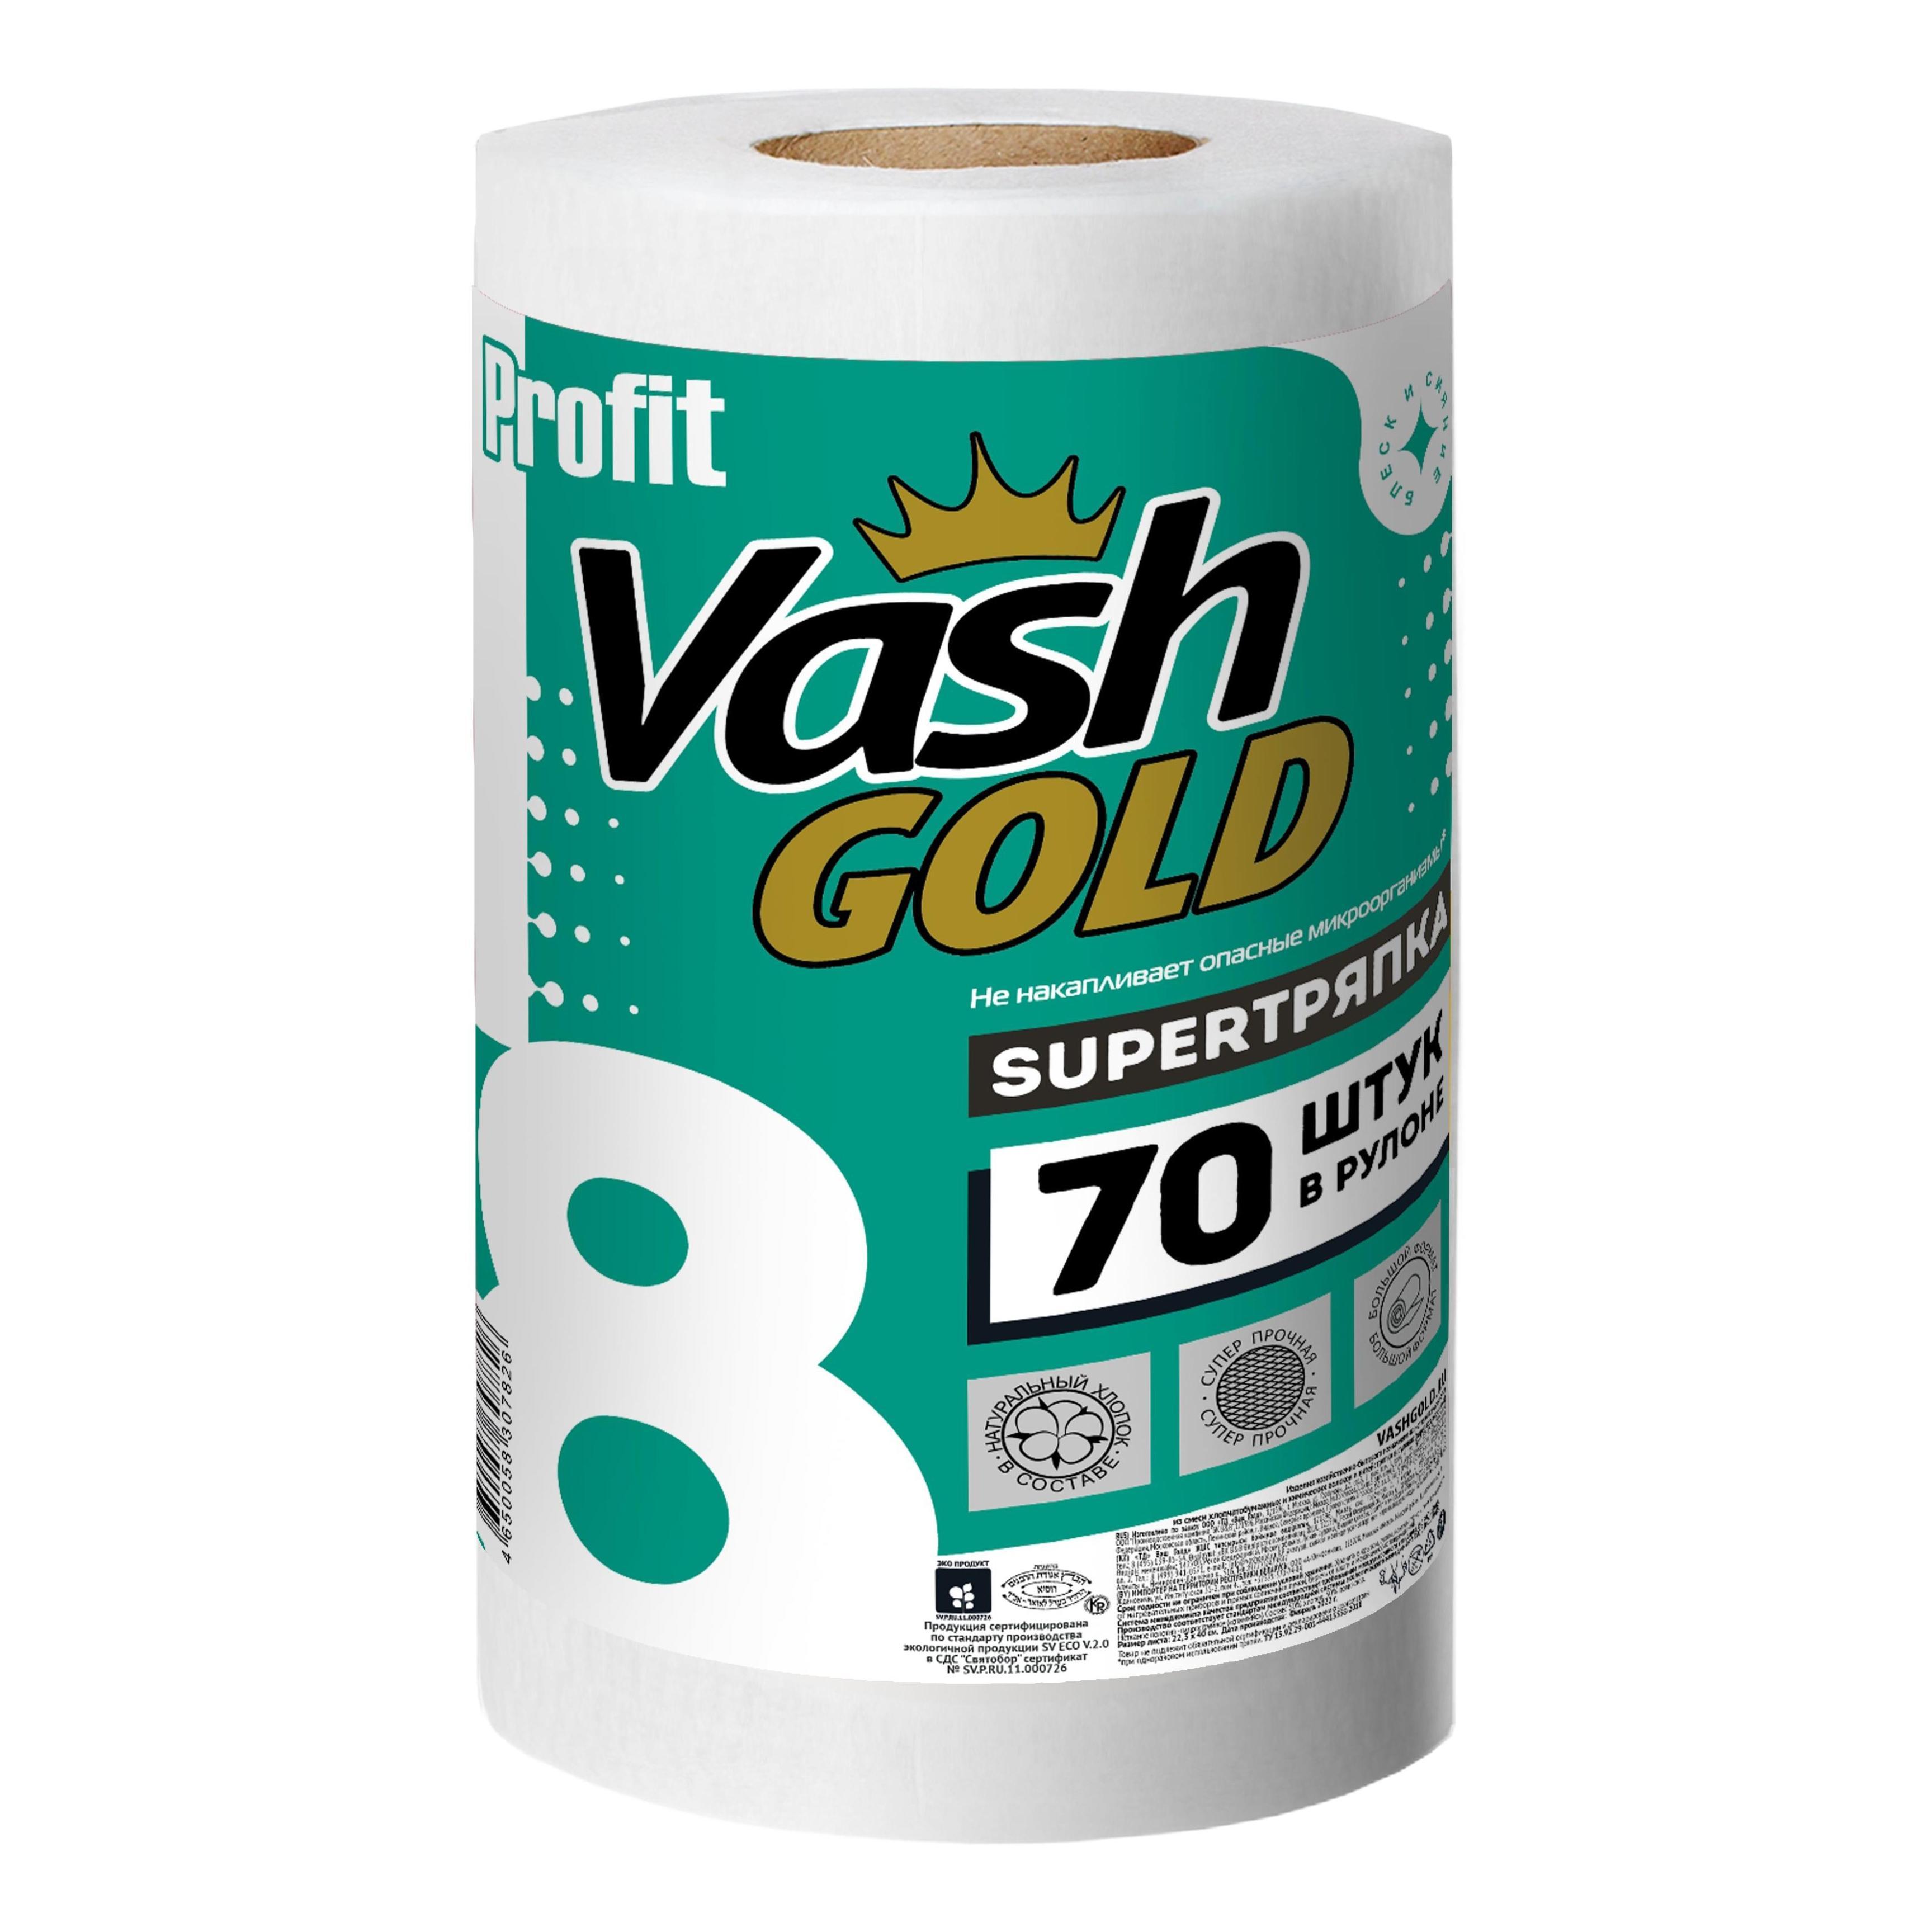 Салфетки хозяйственные Vash Gold profit superтряпка отрывные тисненные 70 шт. в рулоне, бумага